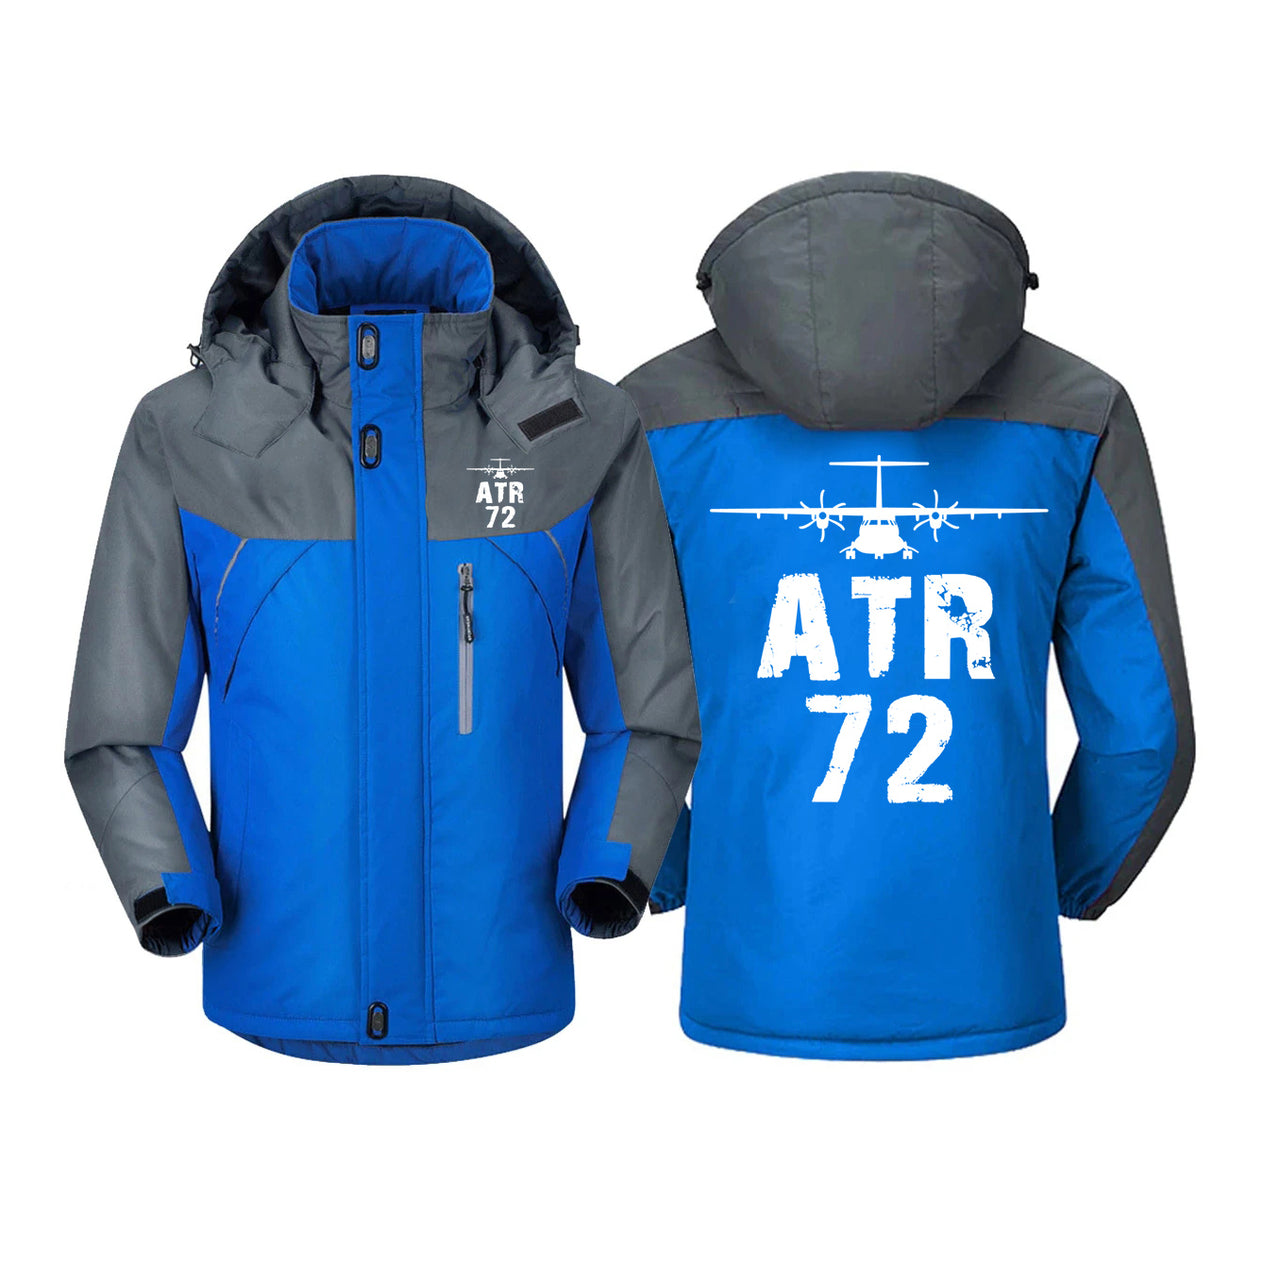 ATR-72 & Plane Designed Thick Winter Jackets